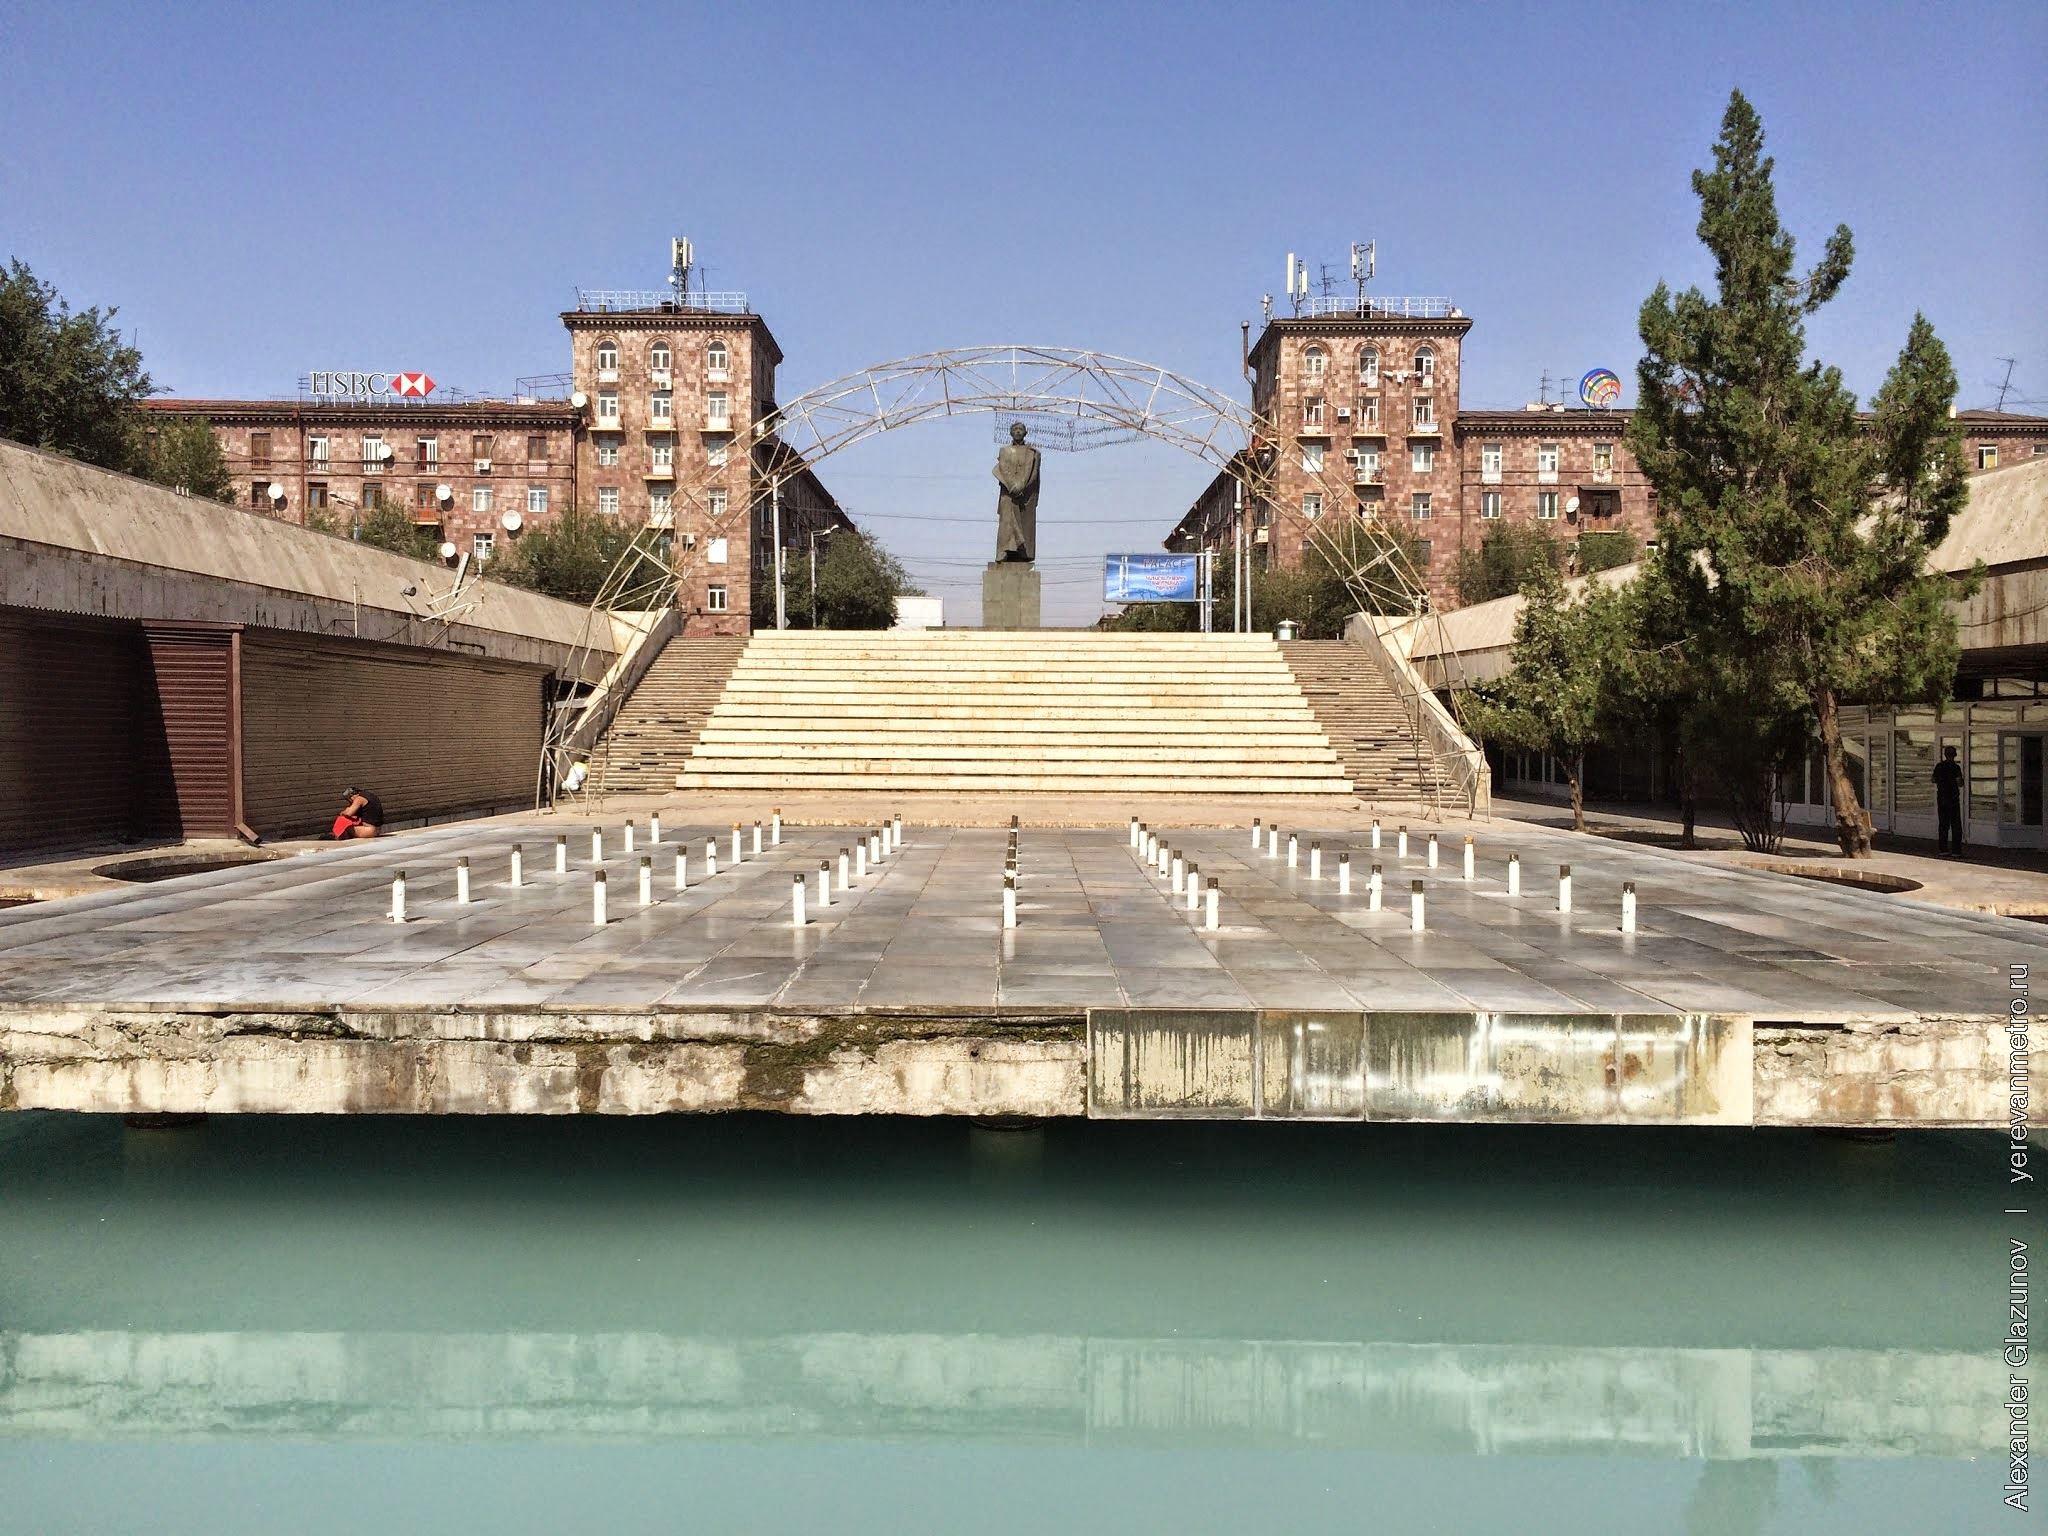 Памятник Сурену Спандаряну на площади Гарегина Нжде (ранее площадь также носила имя Спандаряна). На переднем плане - фонтан. Вход в метро - за спиной фотографа.